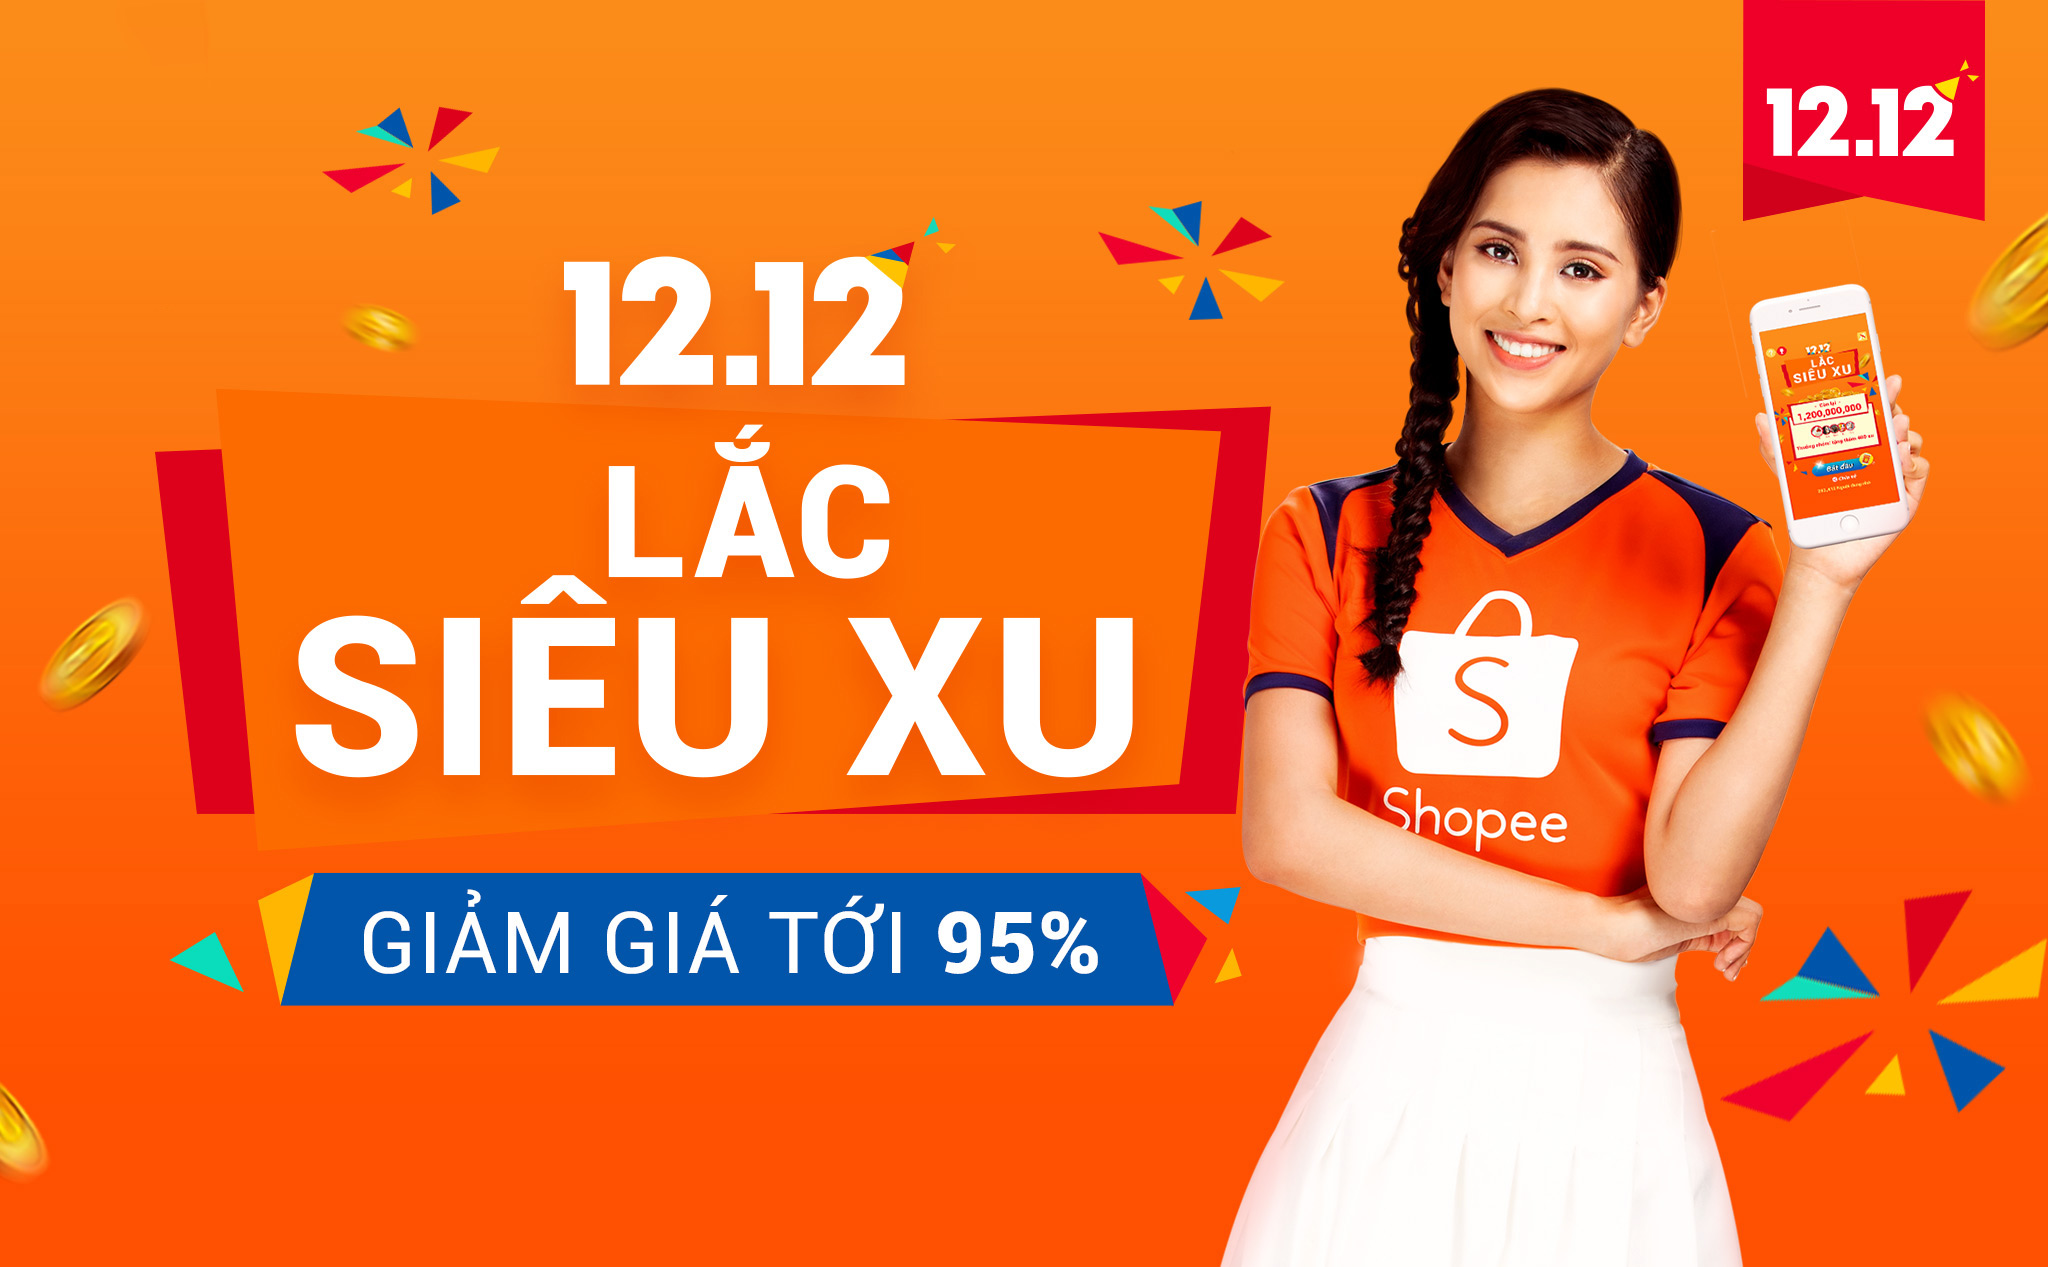 [QC] Giảm giá không tưởng, điện thoại Xiaomi Redmi 6 giá 2,990,000đ, chỉ có trên Shopee ngày 24/11